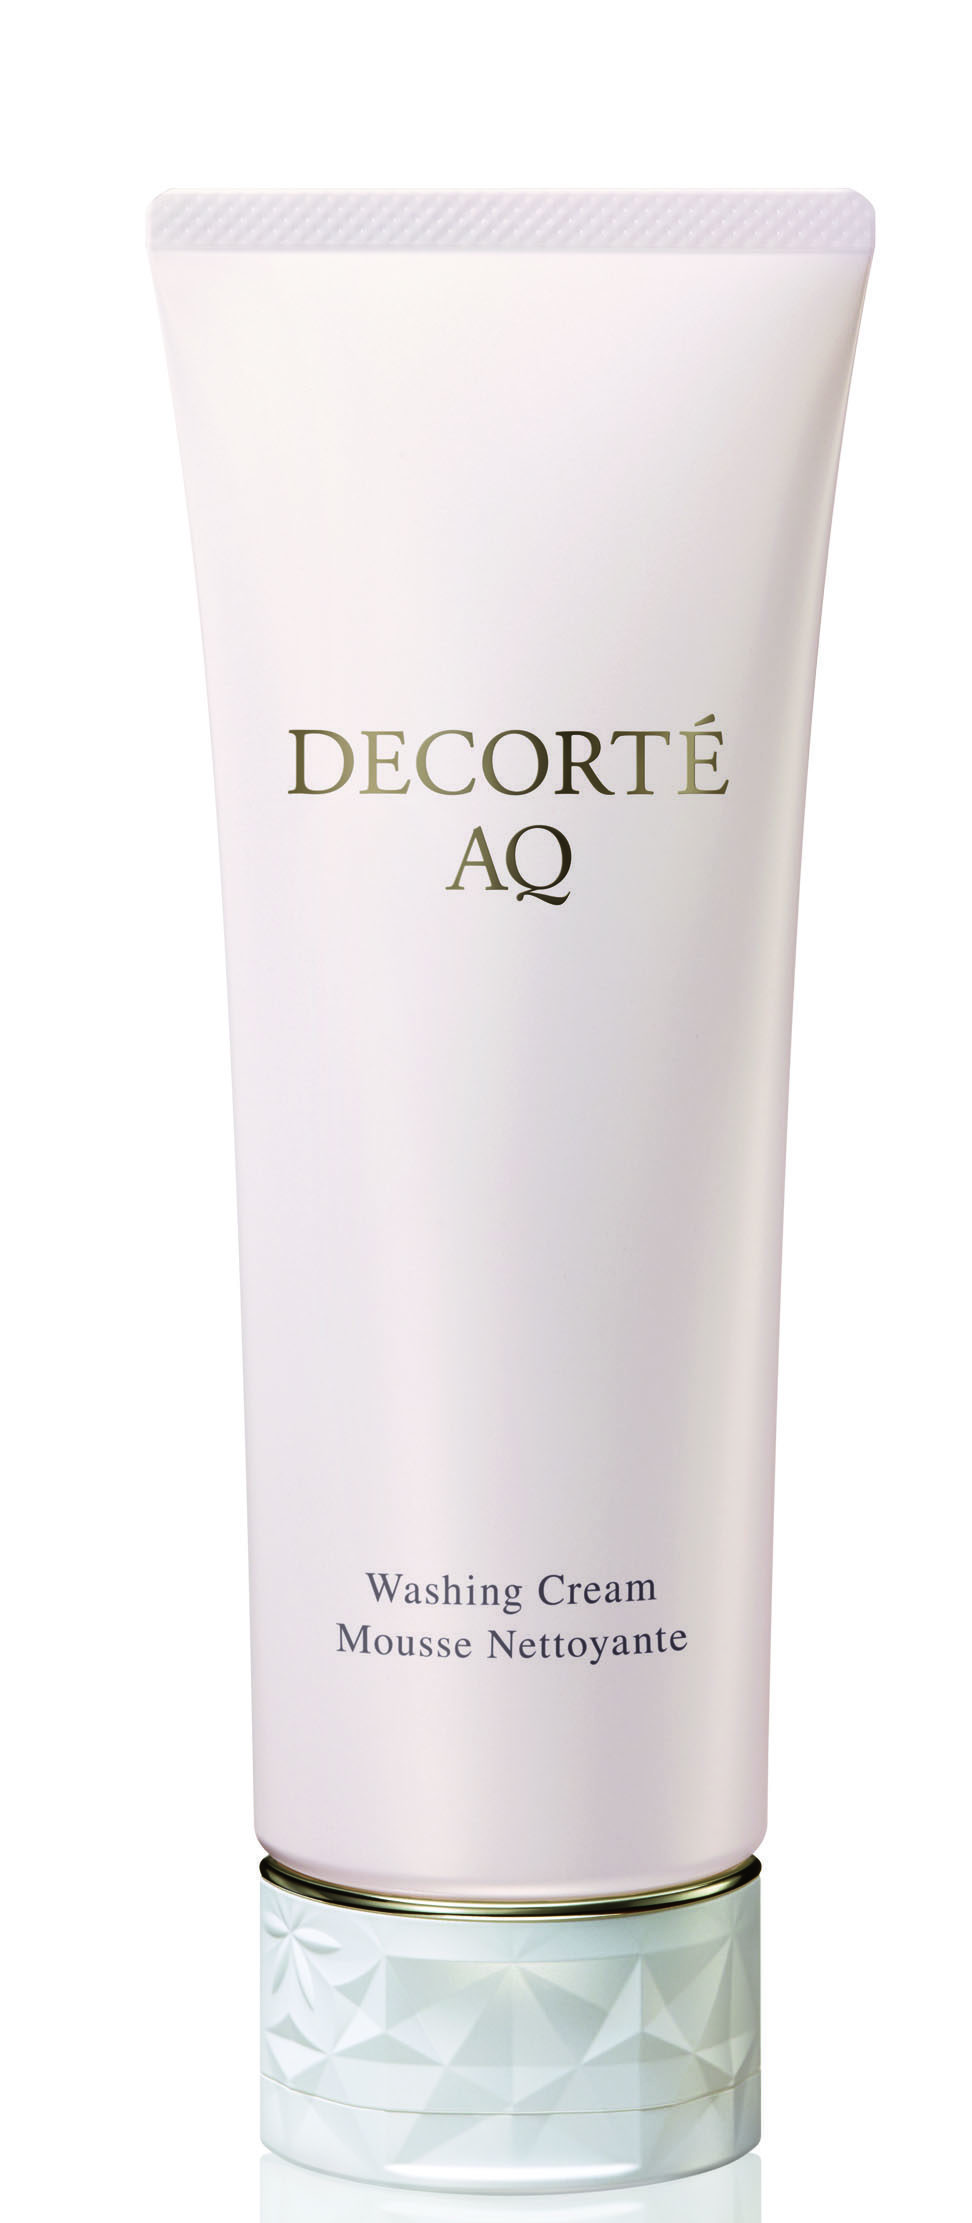 DECORTÉ AQ Washing Cream per una detersione efficace e piacevole